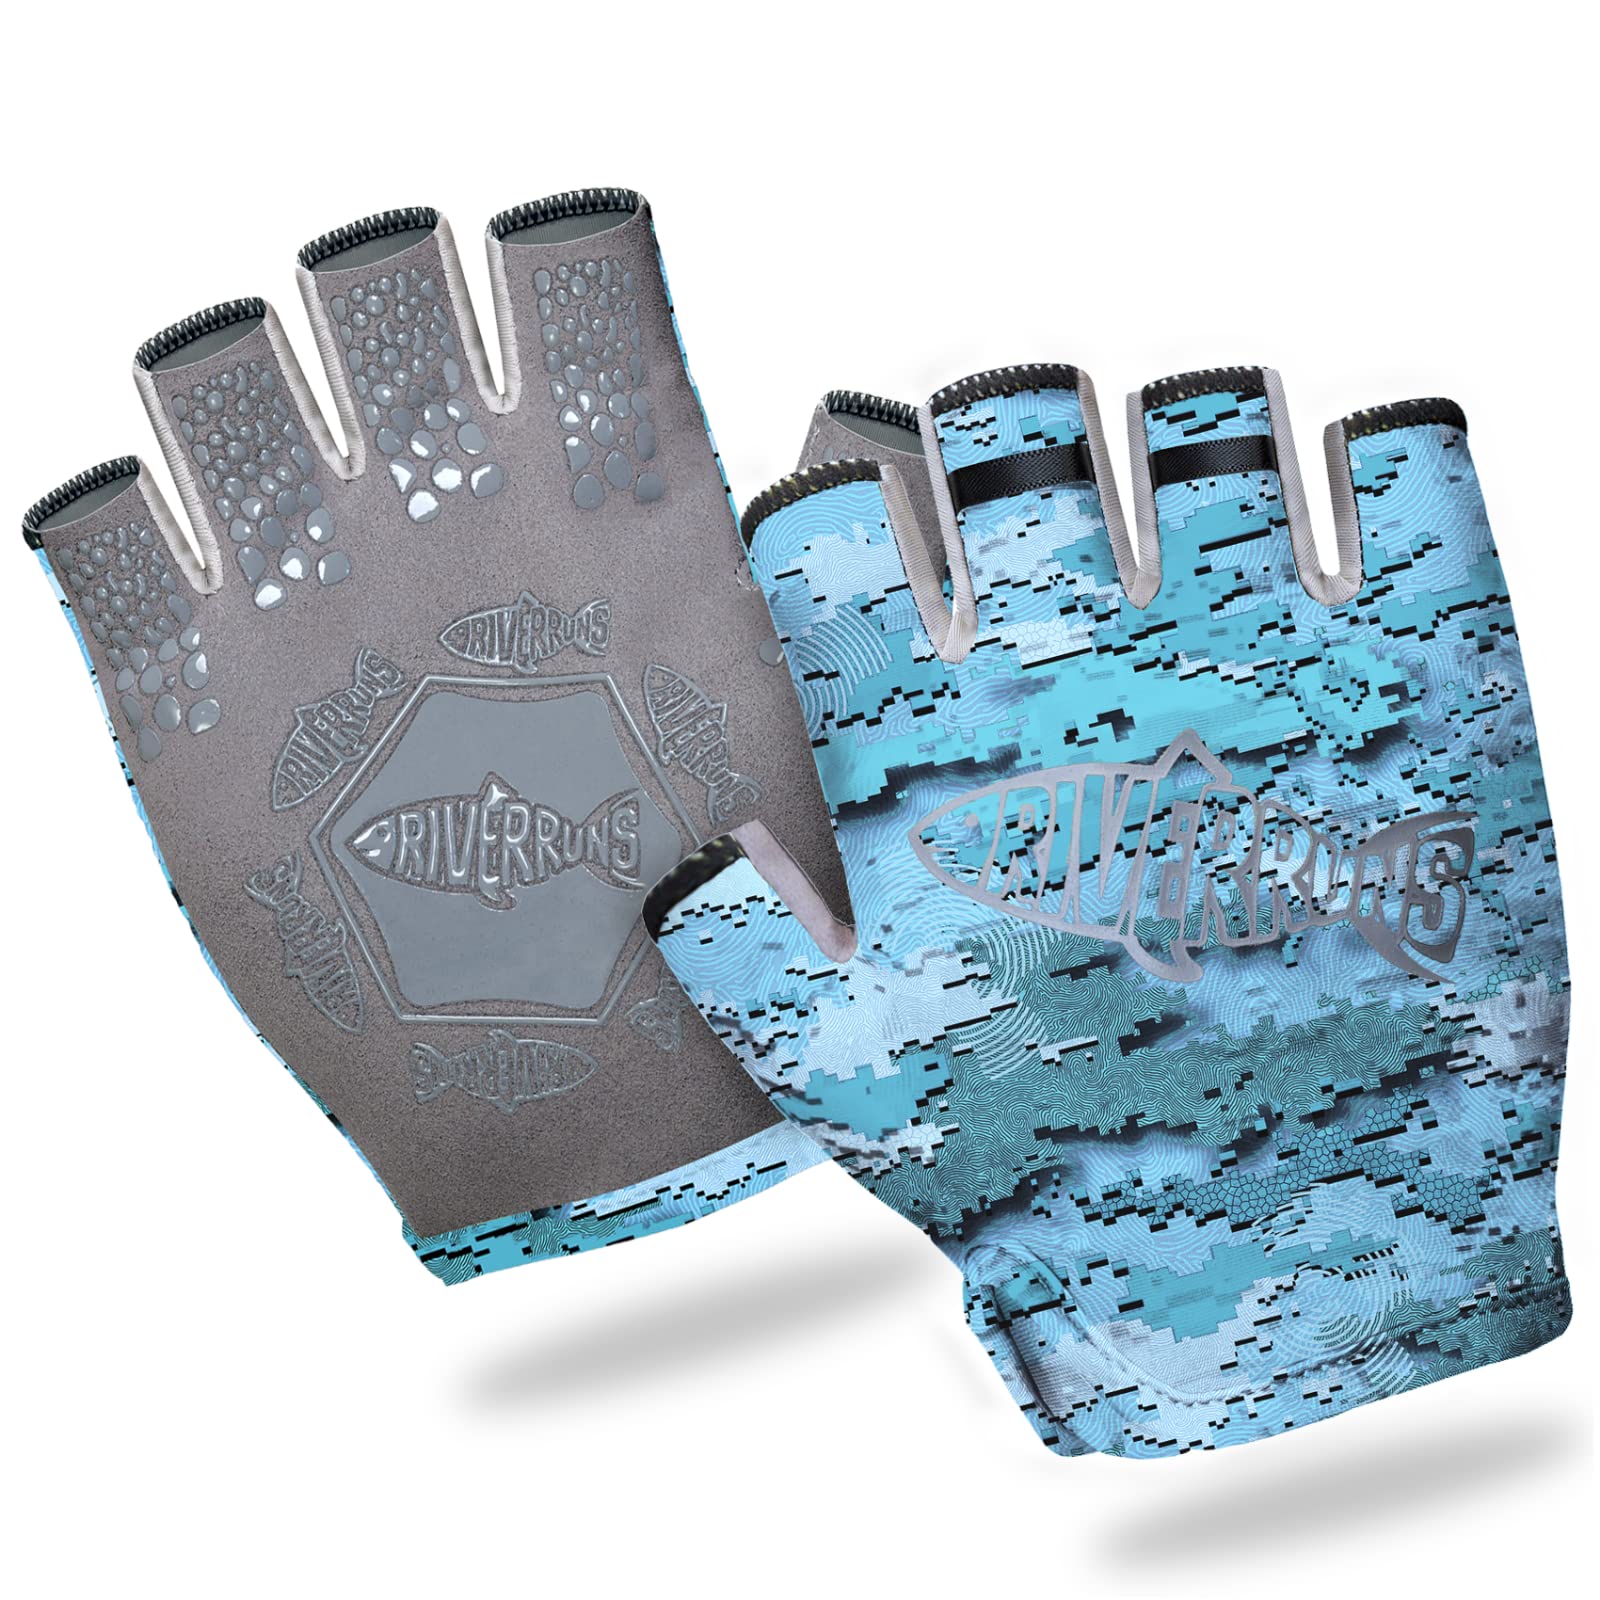 Riverruns Fishing Gloves, UPF50+ Sun Gloves, Fingerless Fishing Gloves,  Lightweight Breathable Fishing Gloves Men for Kayaking Paddling Driving  Hiking Fishing CamoBlue Small